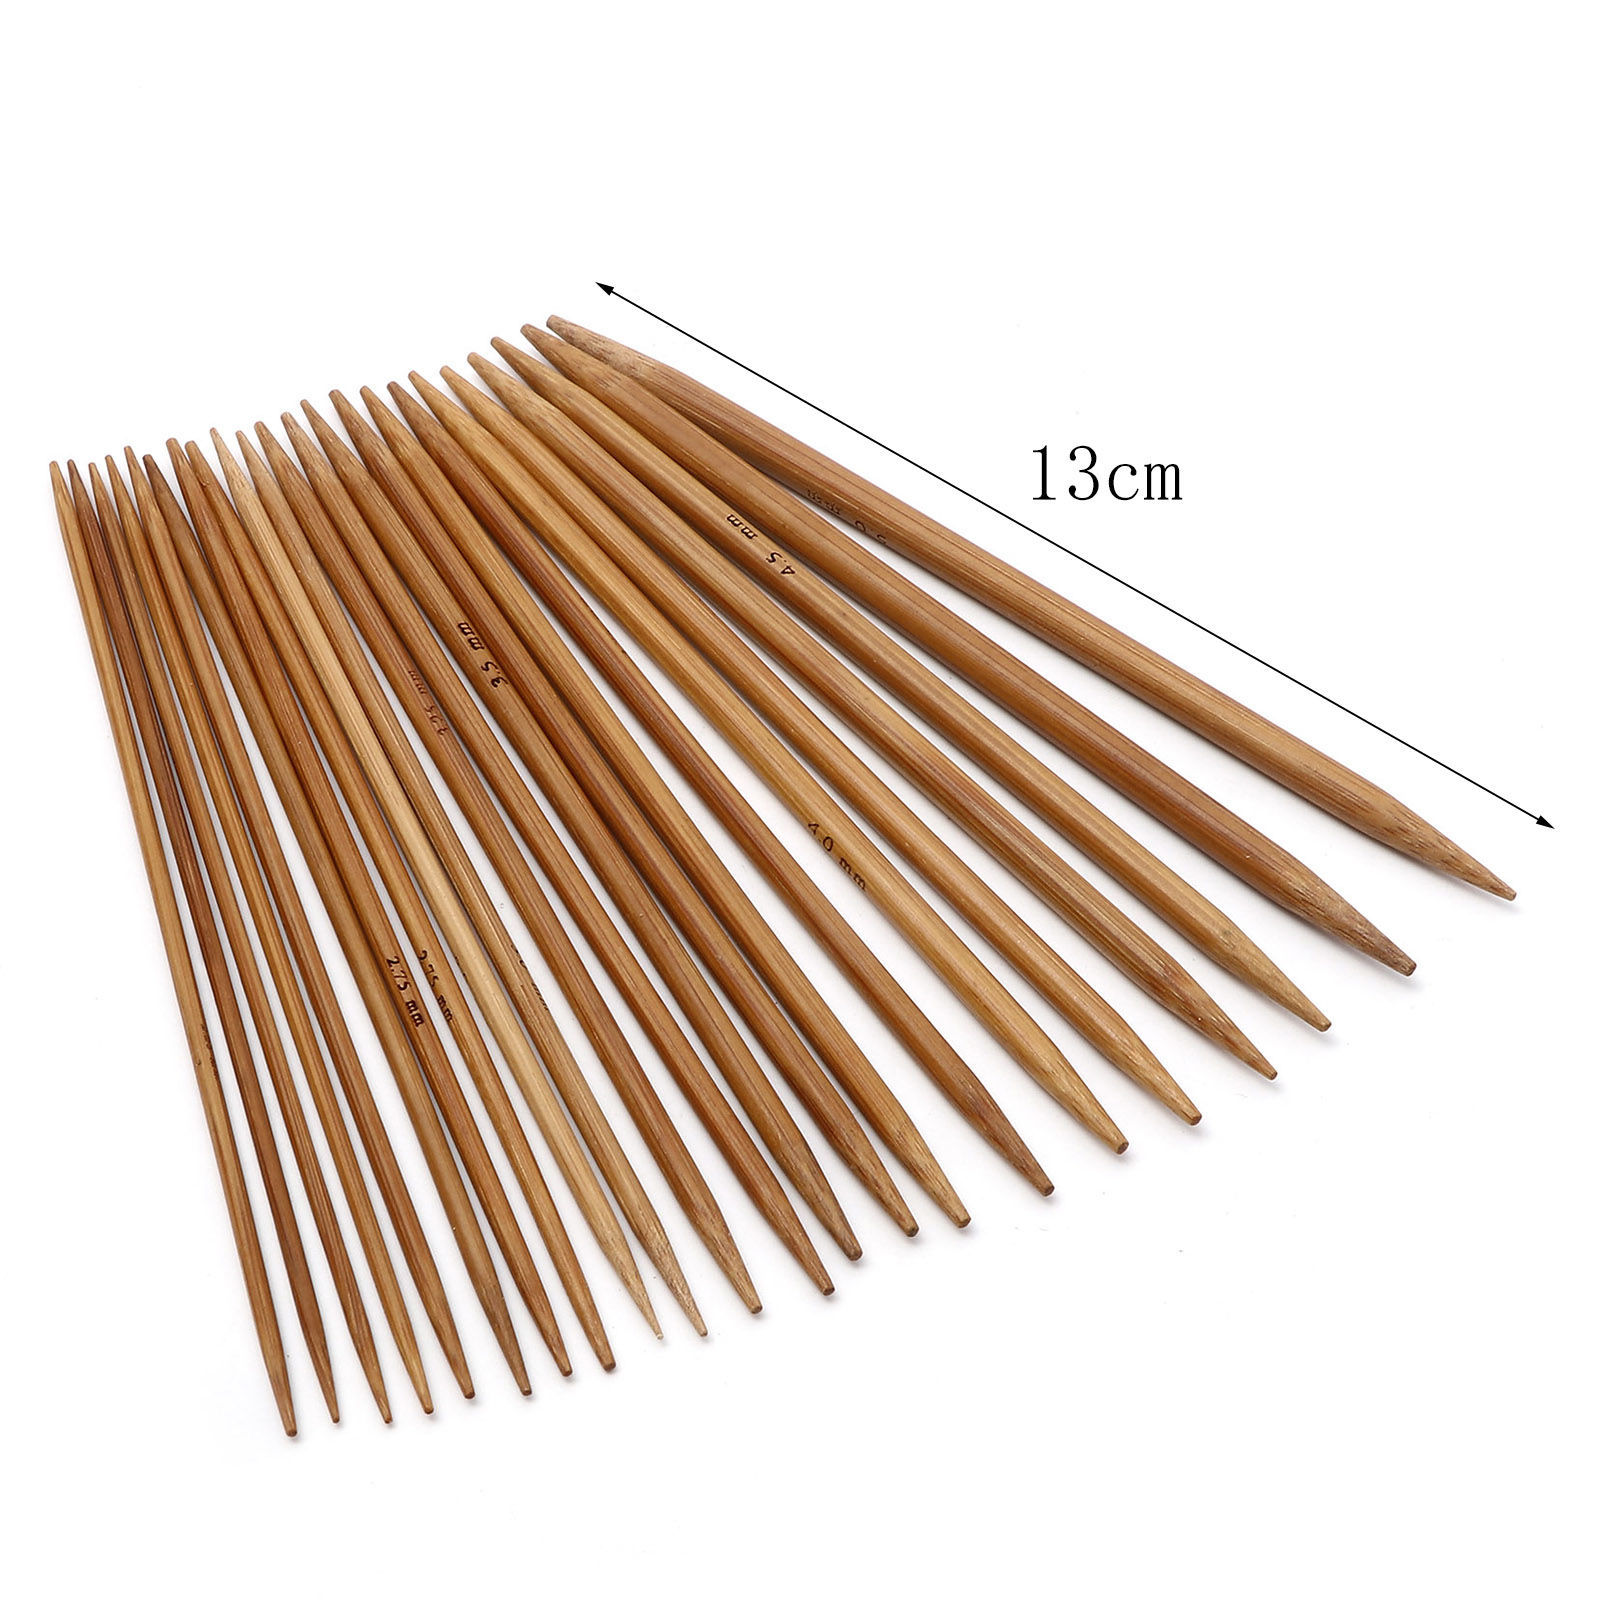 Bild von Bambus Stricknadel mit Doppelte Öse Braun 13cm lang, 5 Stücke